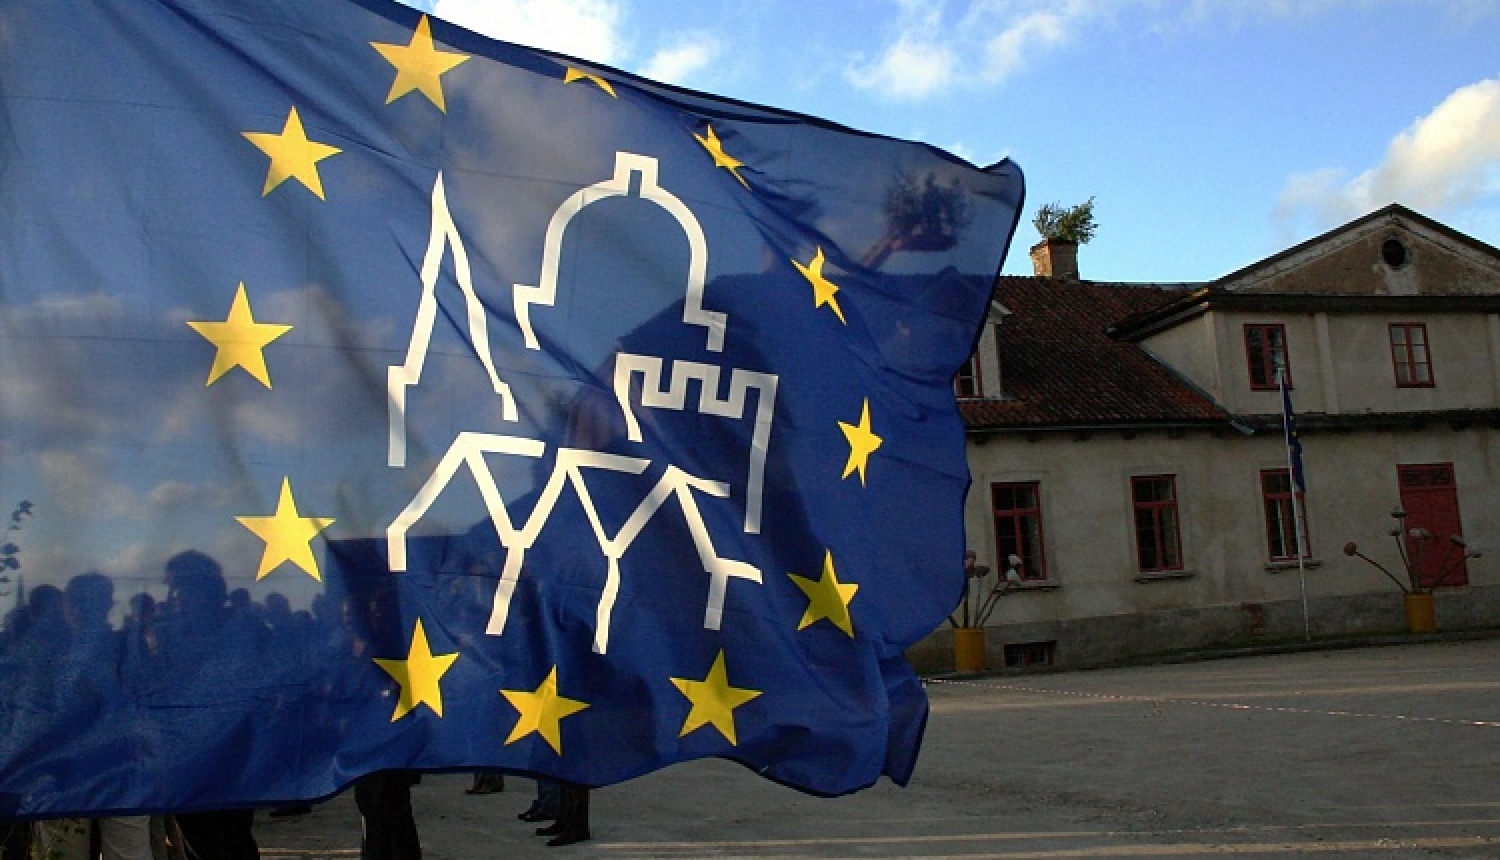 Līdz 15. martam aicina pieteikties dalībai Eiropas kultūras mantojuma dienās